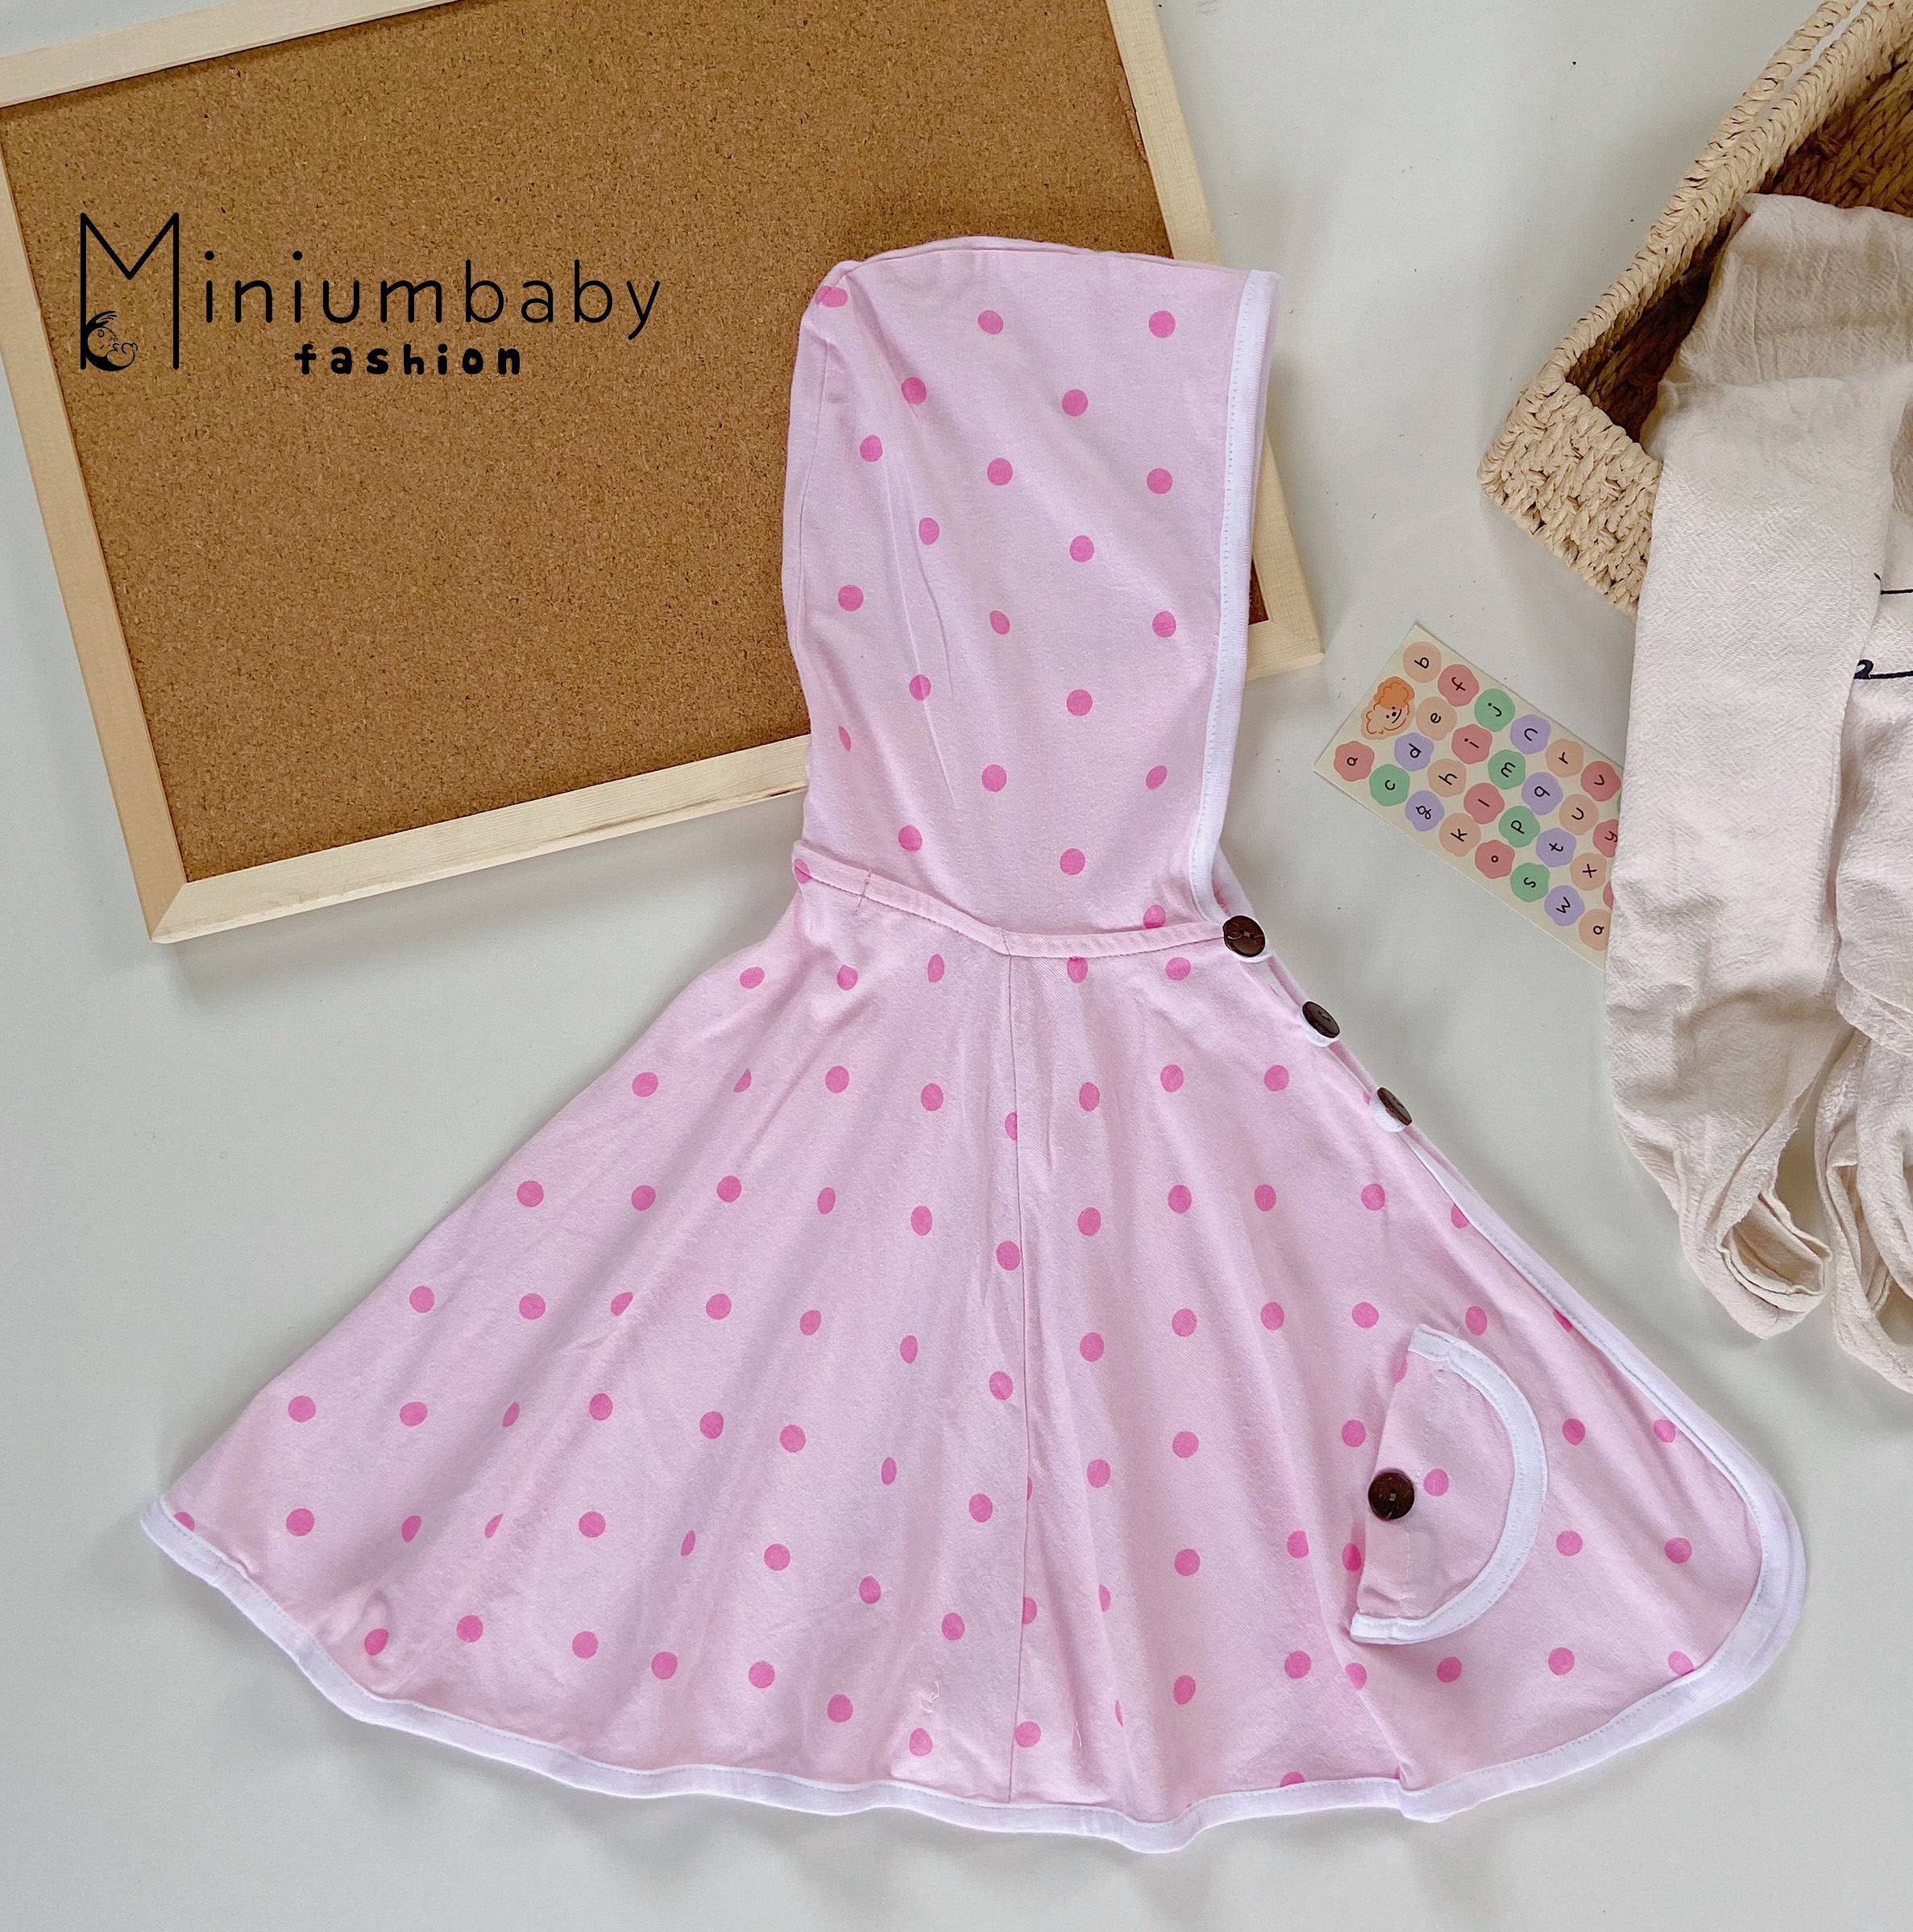 Áo choàng cho bé dưới 13 tháng tuổi Minium, chống nắng cho trẻ em, sơ sinh, bé gái, áo cánh dơi chất cotton-ChamBi